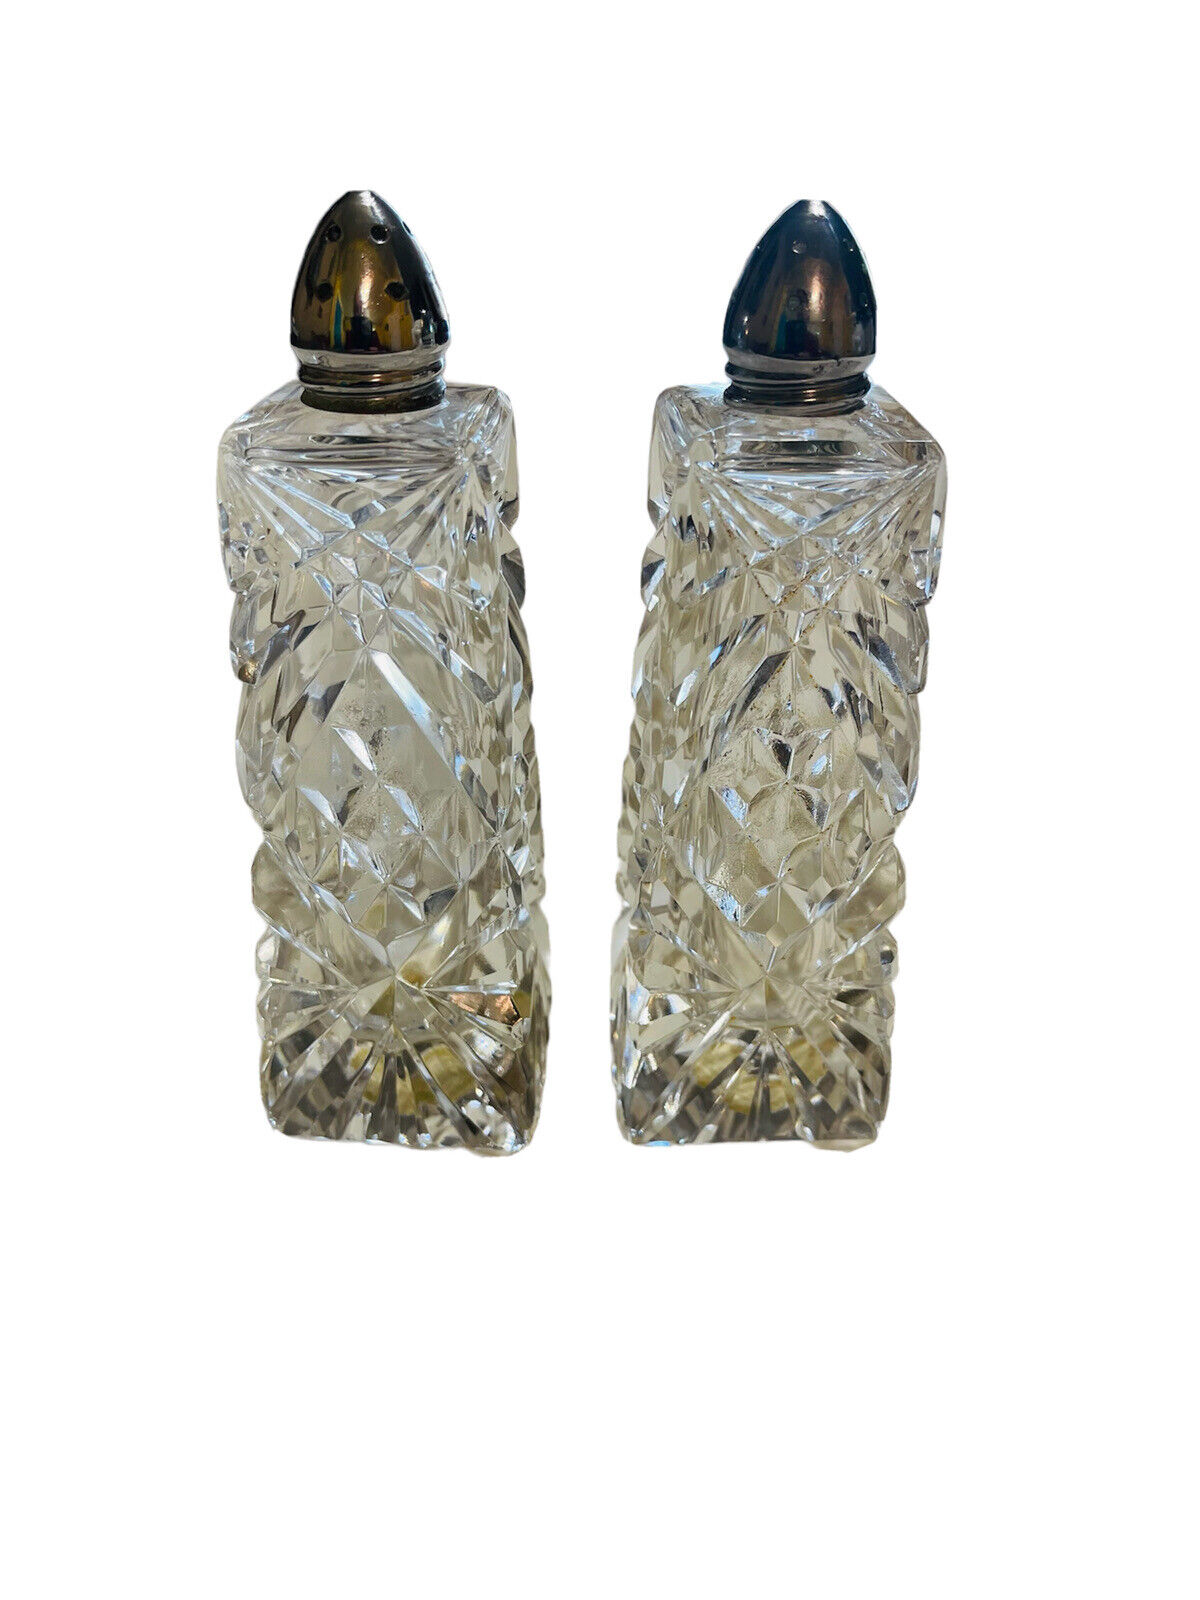 VTg Elegant (2) Clear Cut Crystal Salt & Pepper Shaker Bottle With Metal Tops